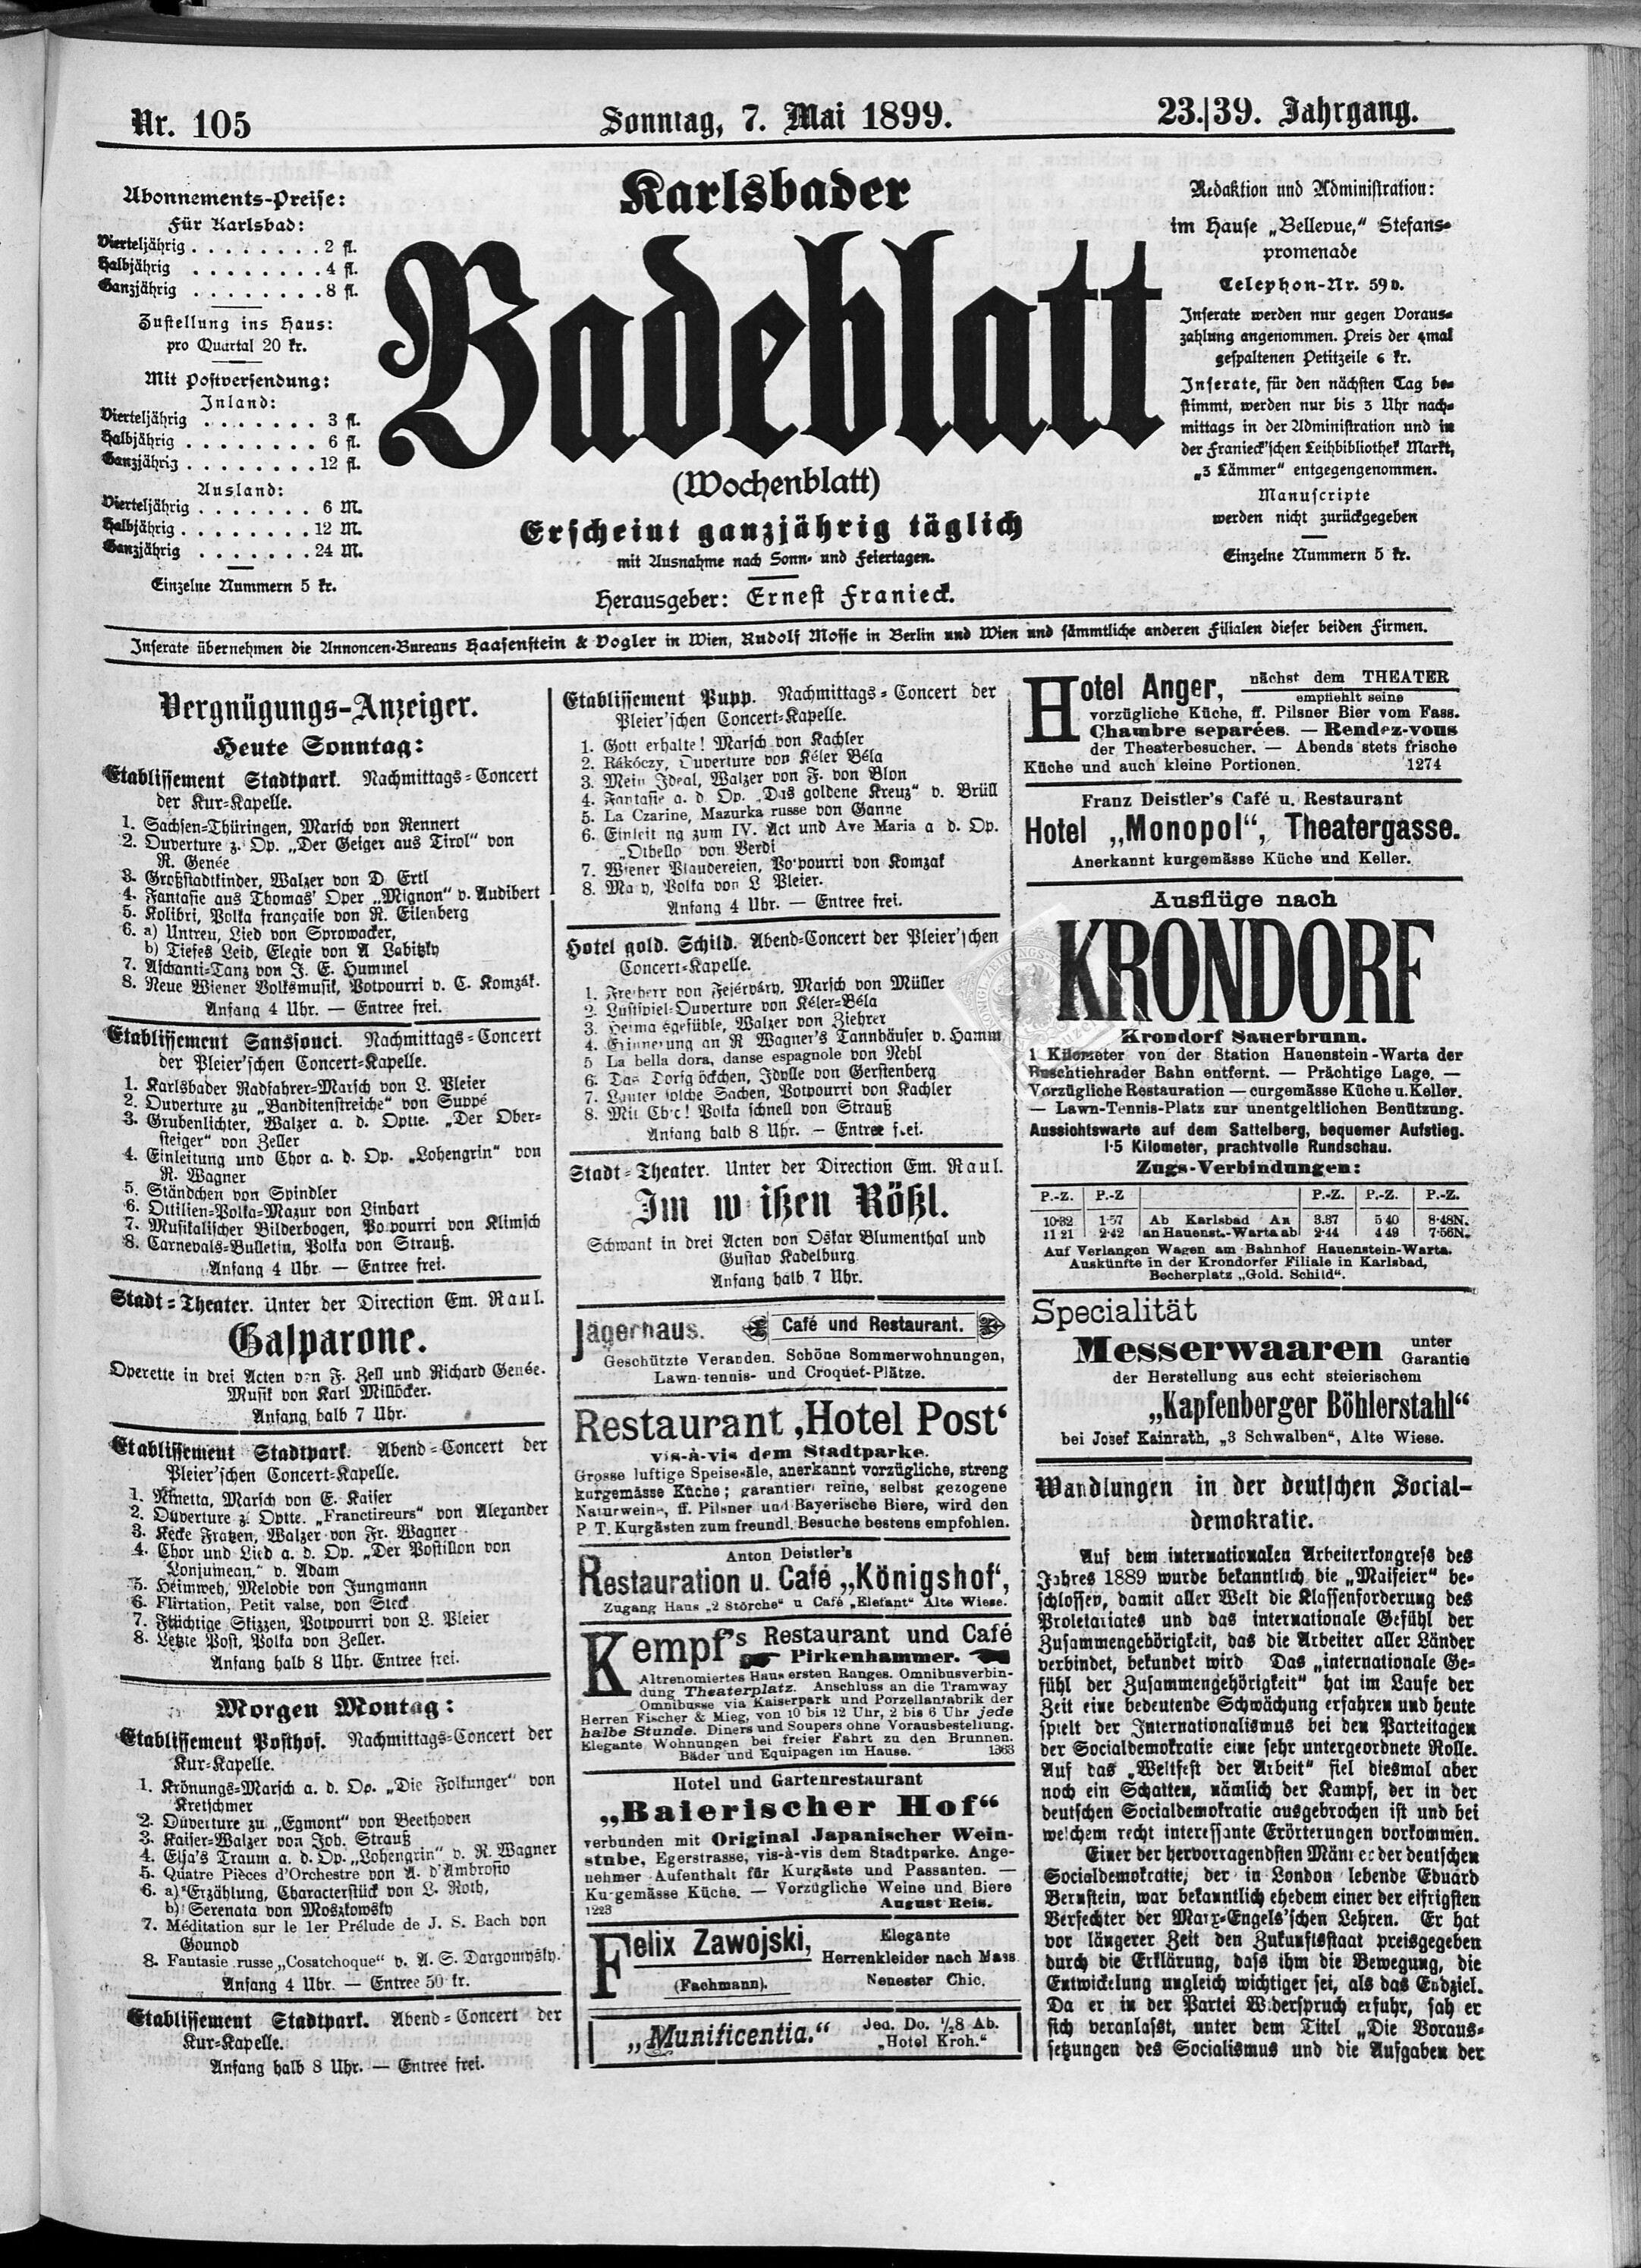 1. karlsbader-badeblatt-1899-05-07-n105_4815